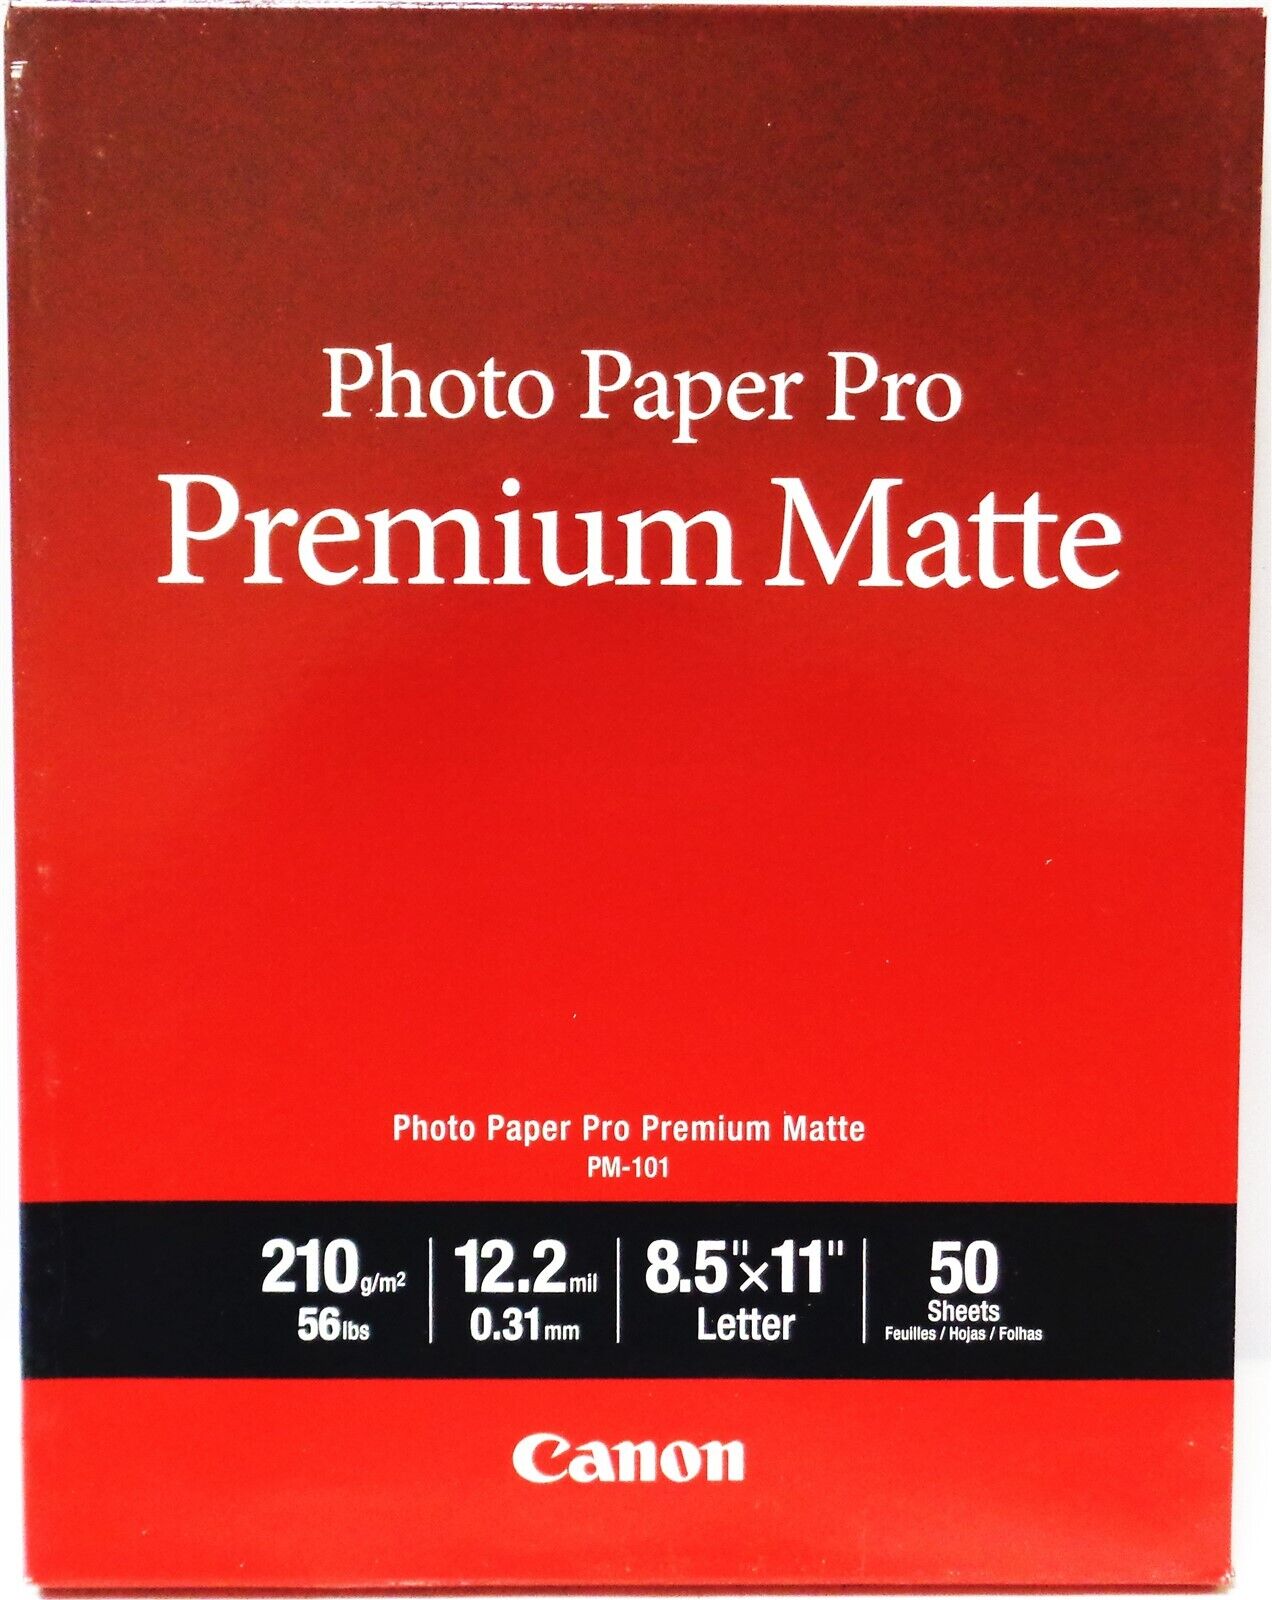 Canon PM-101 Photo Paper Pro Premium Matte 50 sheets/pkg 8.5\